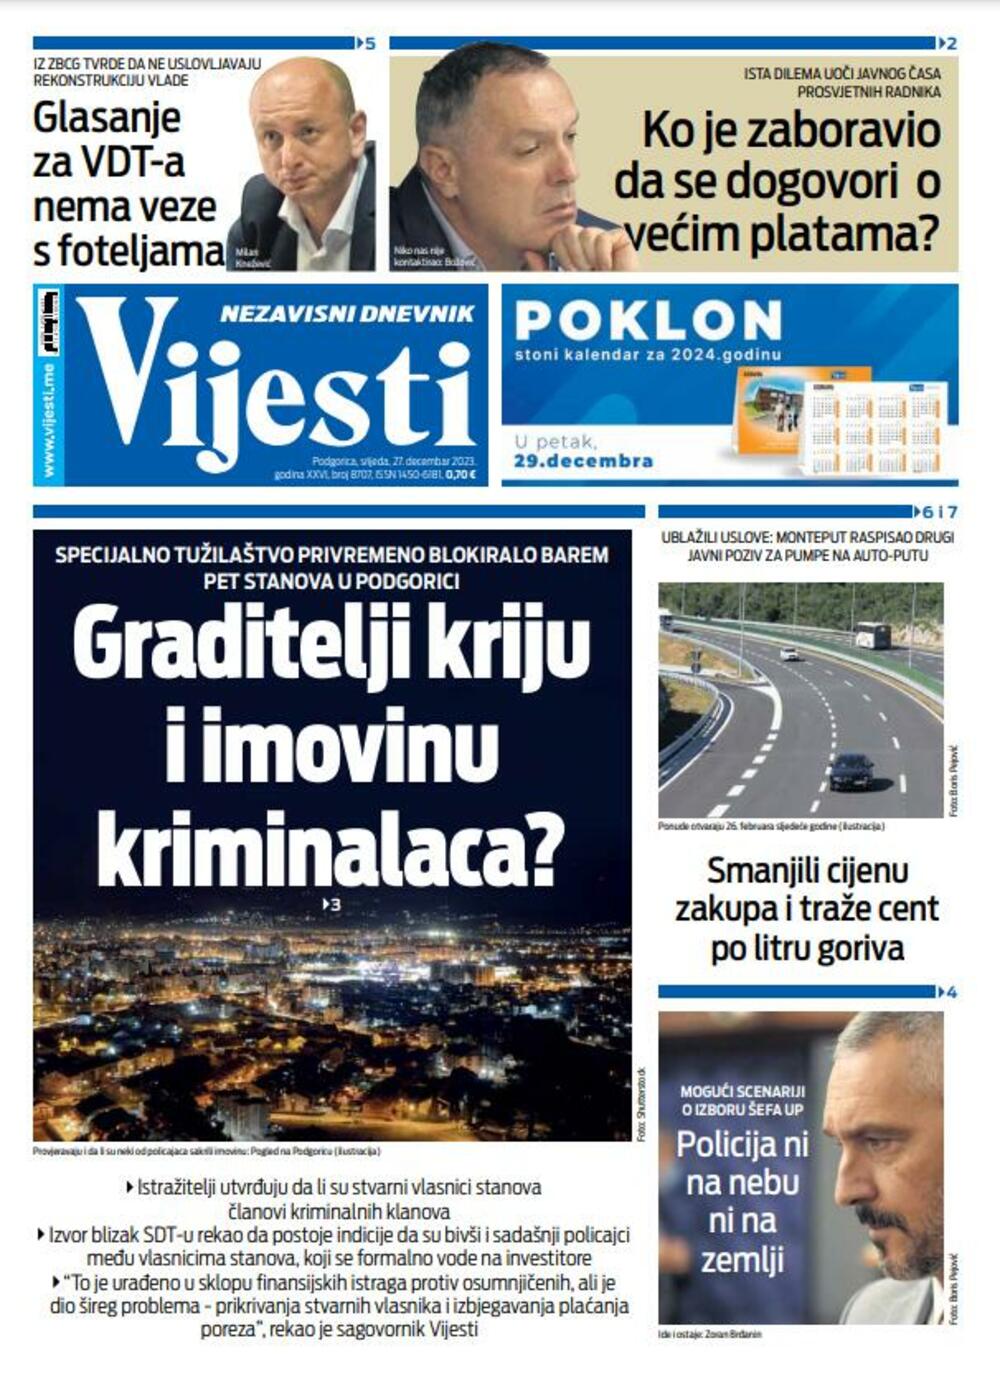 Naslovna strana "Vijesti" za 27. decembar 2023., Foto: Vijesti